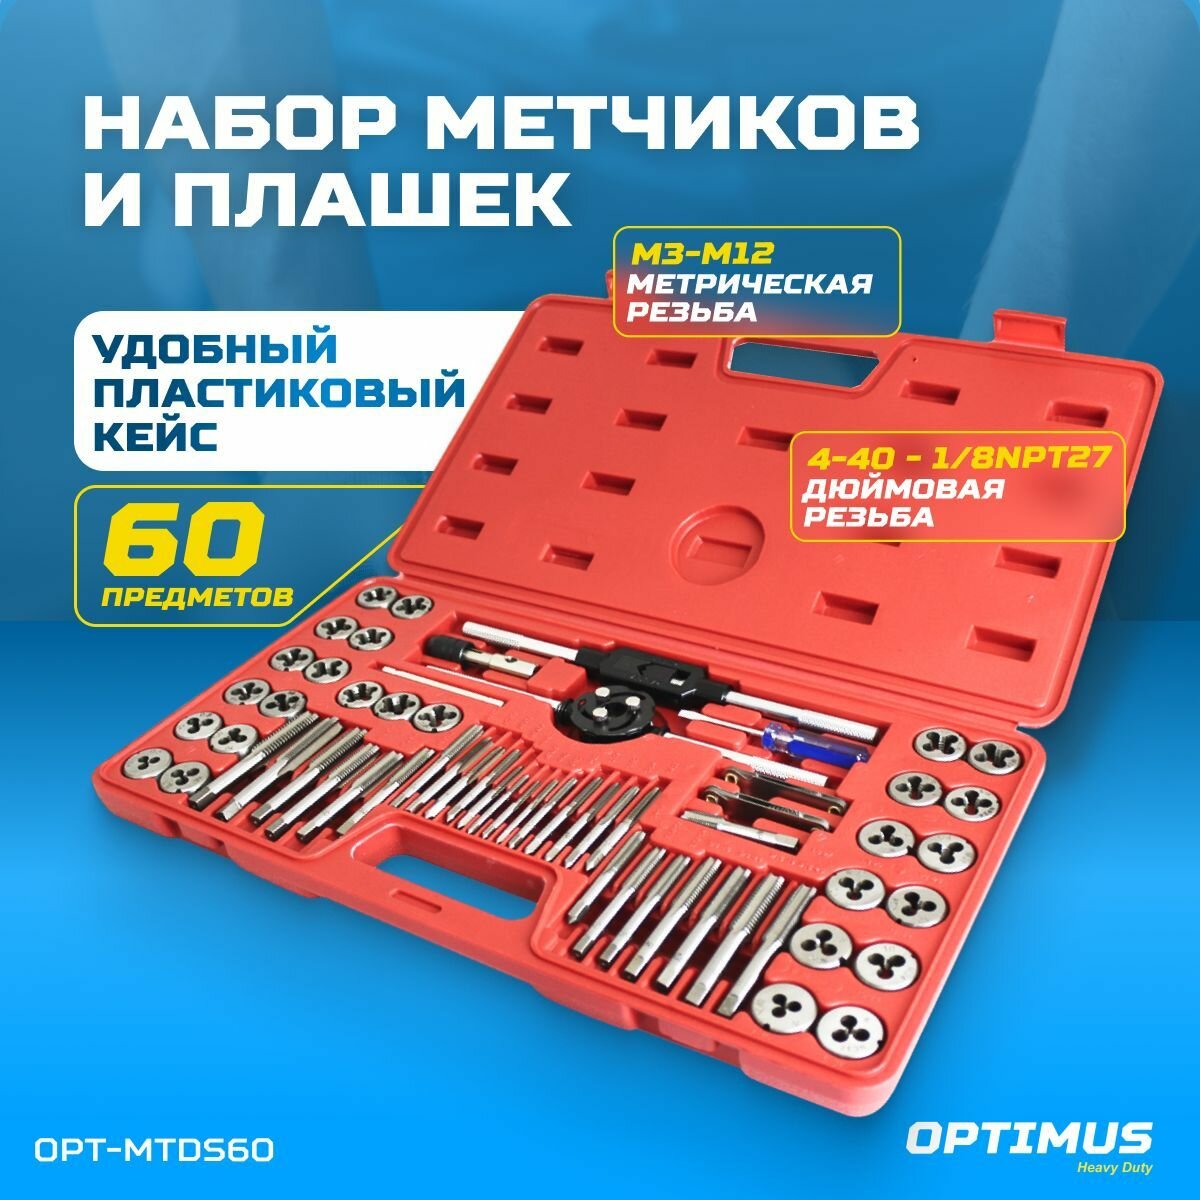 OPT-MTDS60 Набор метчиков и плашек М3 - 12 4-40 - 1/8NPT27 60 предм метрическая и дюймовая резьба